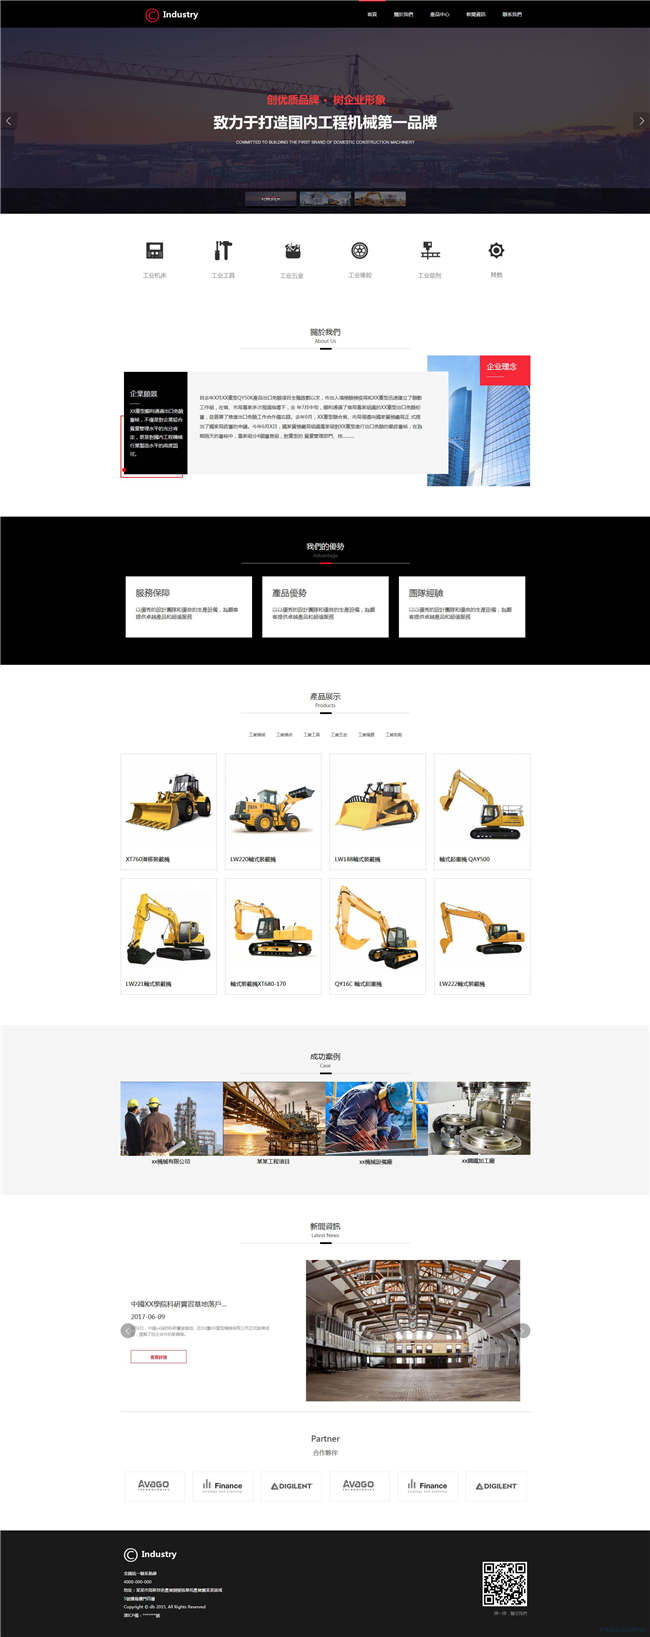 工业机械设备工业制品网站模板源码下载演示图